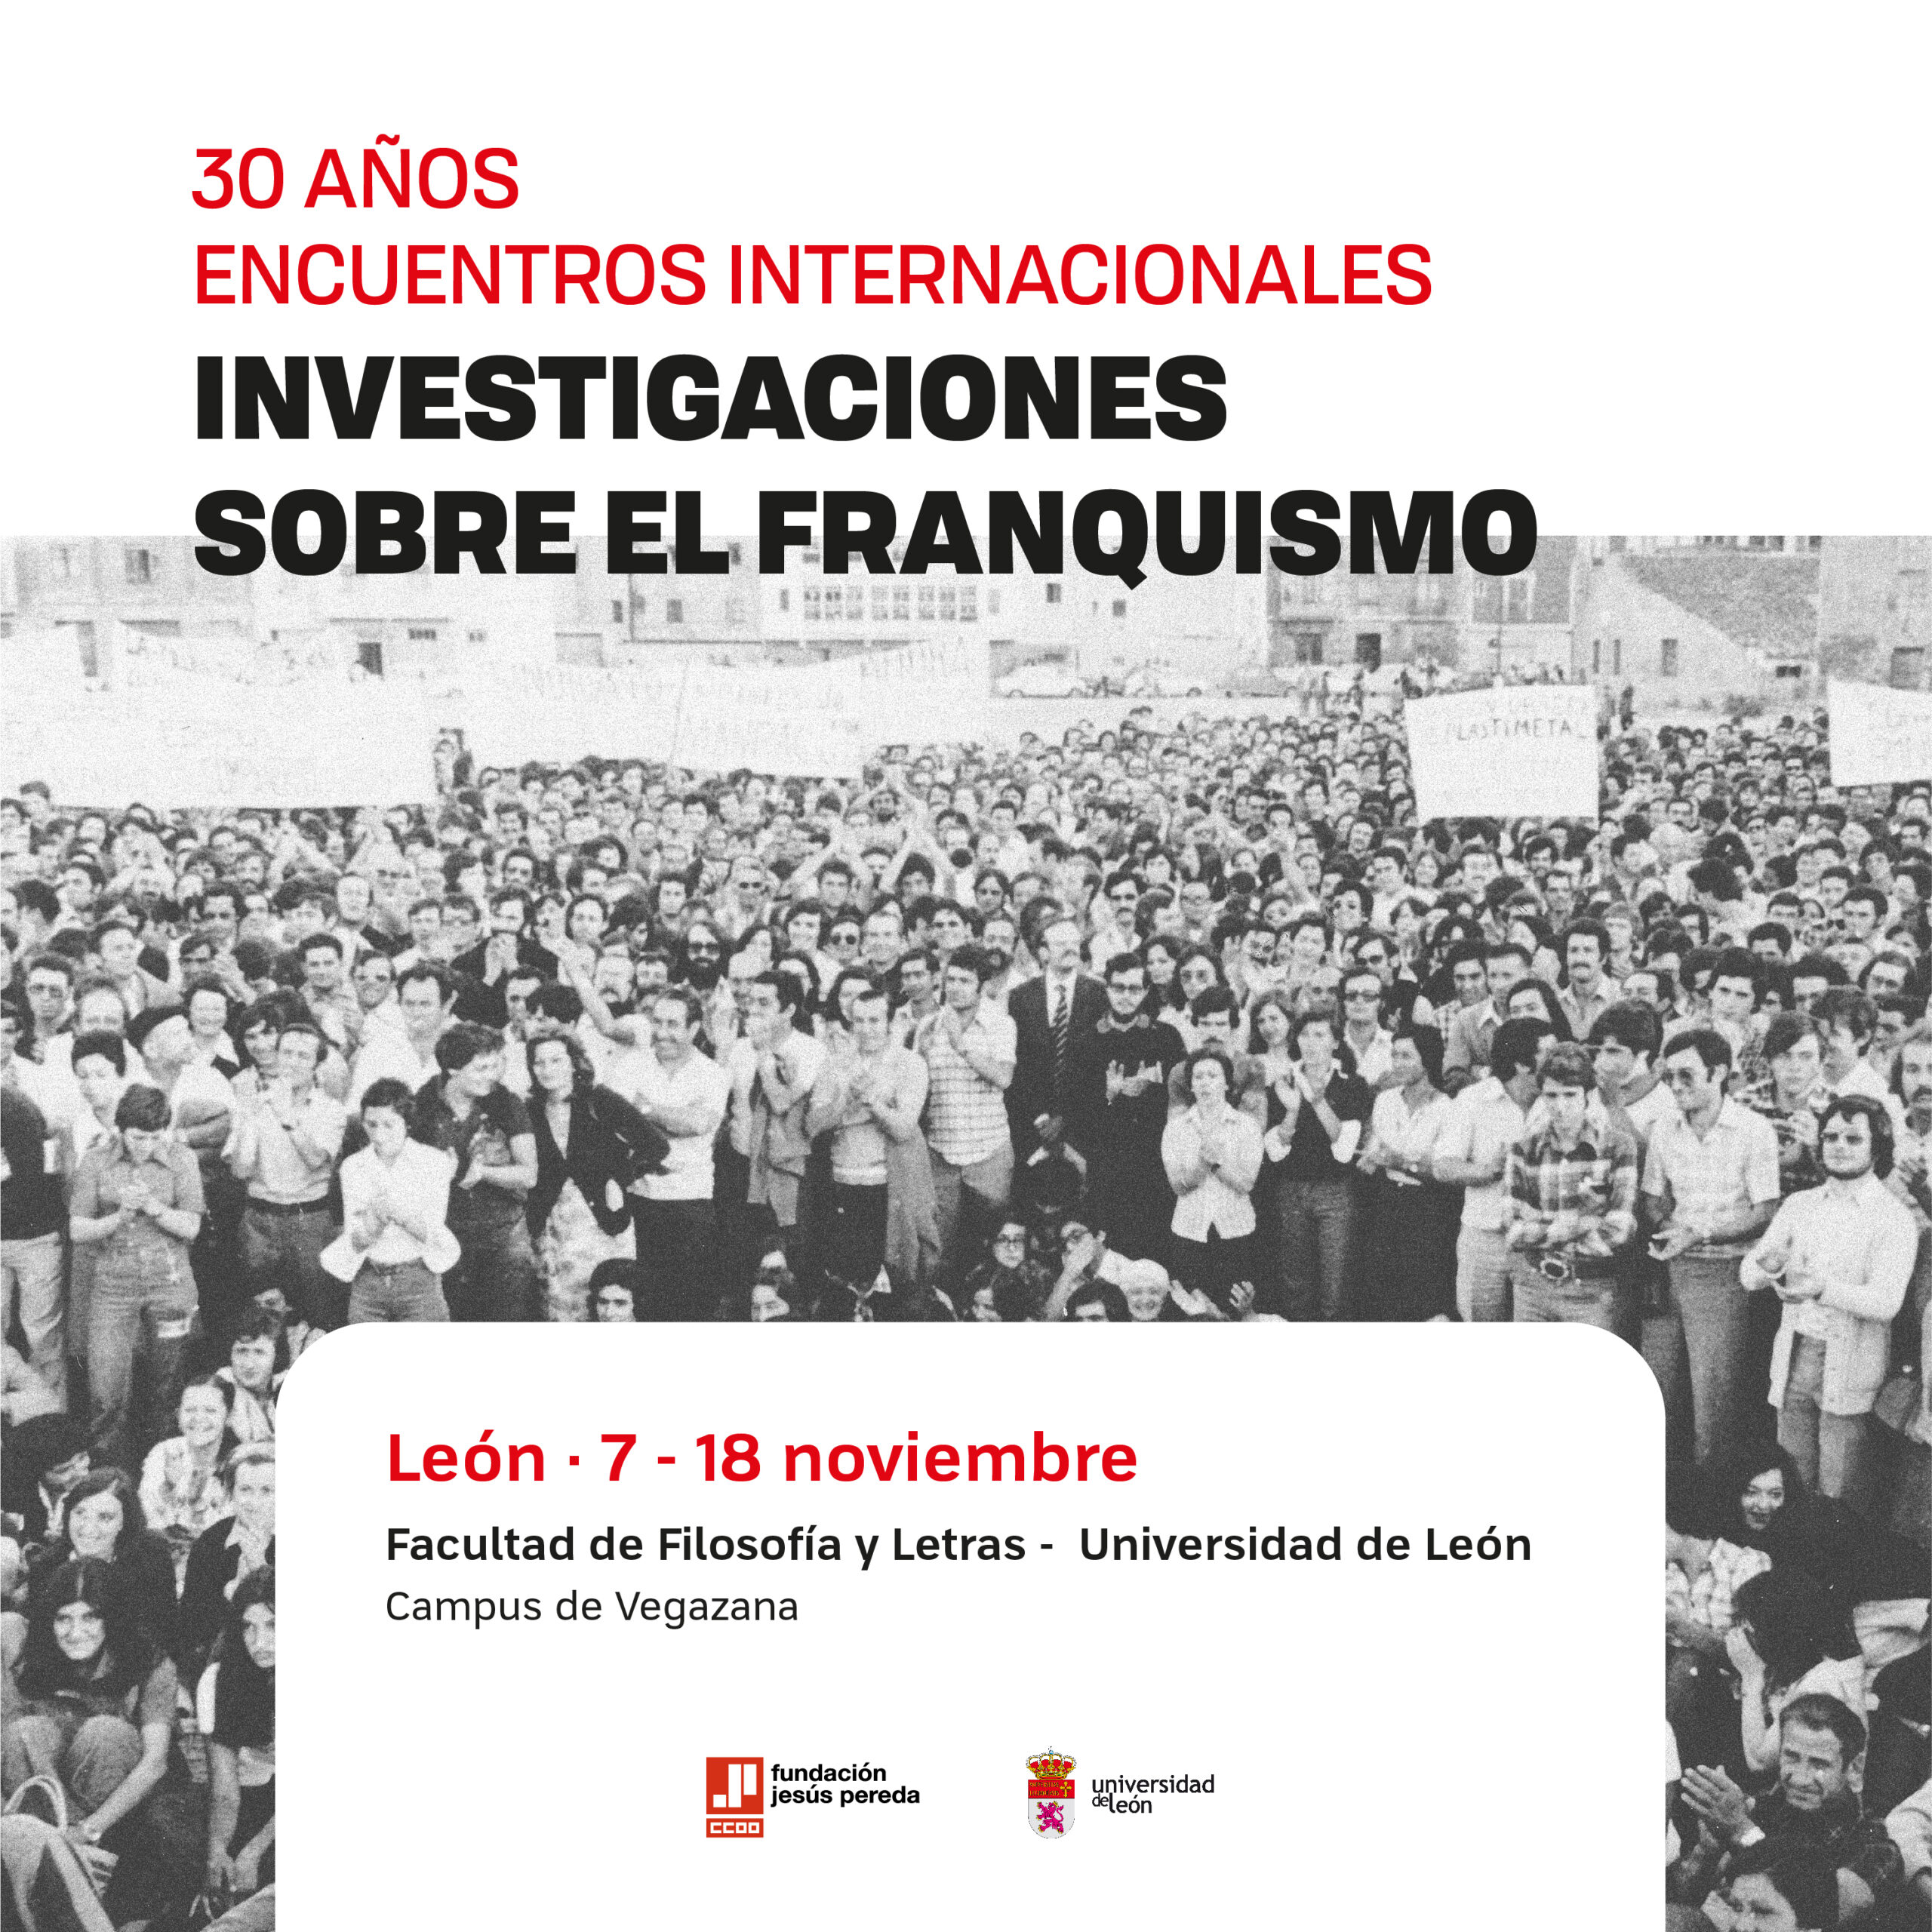 30 Años Encuentros internacionales investigaciones sobre el franquismo